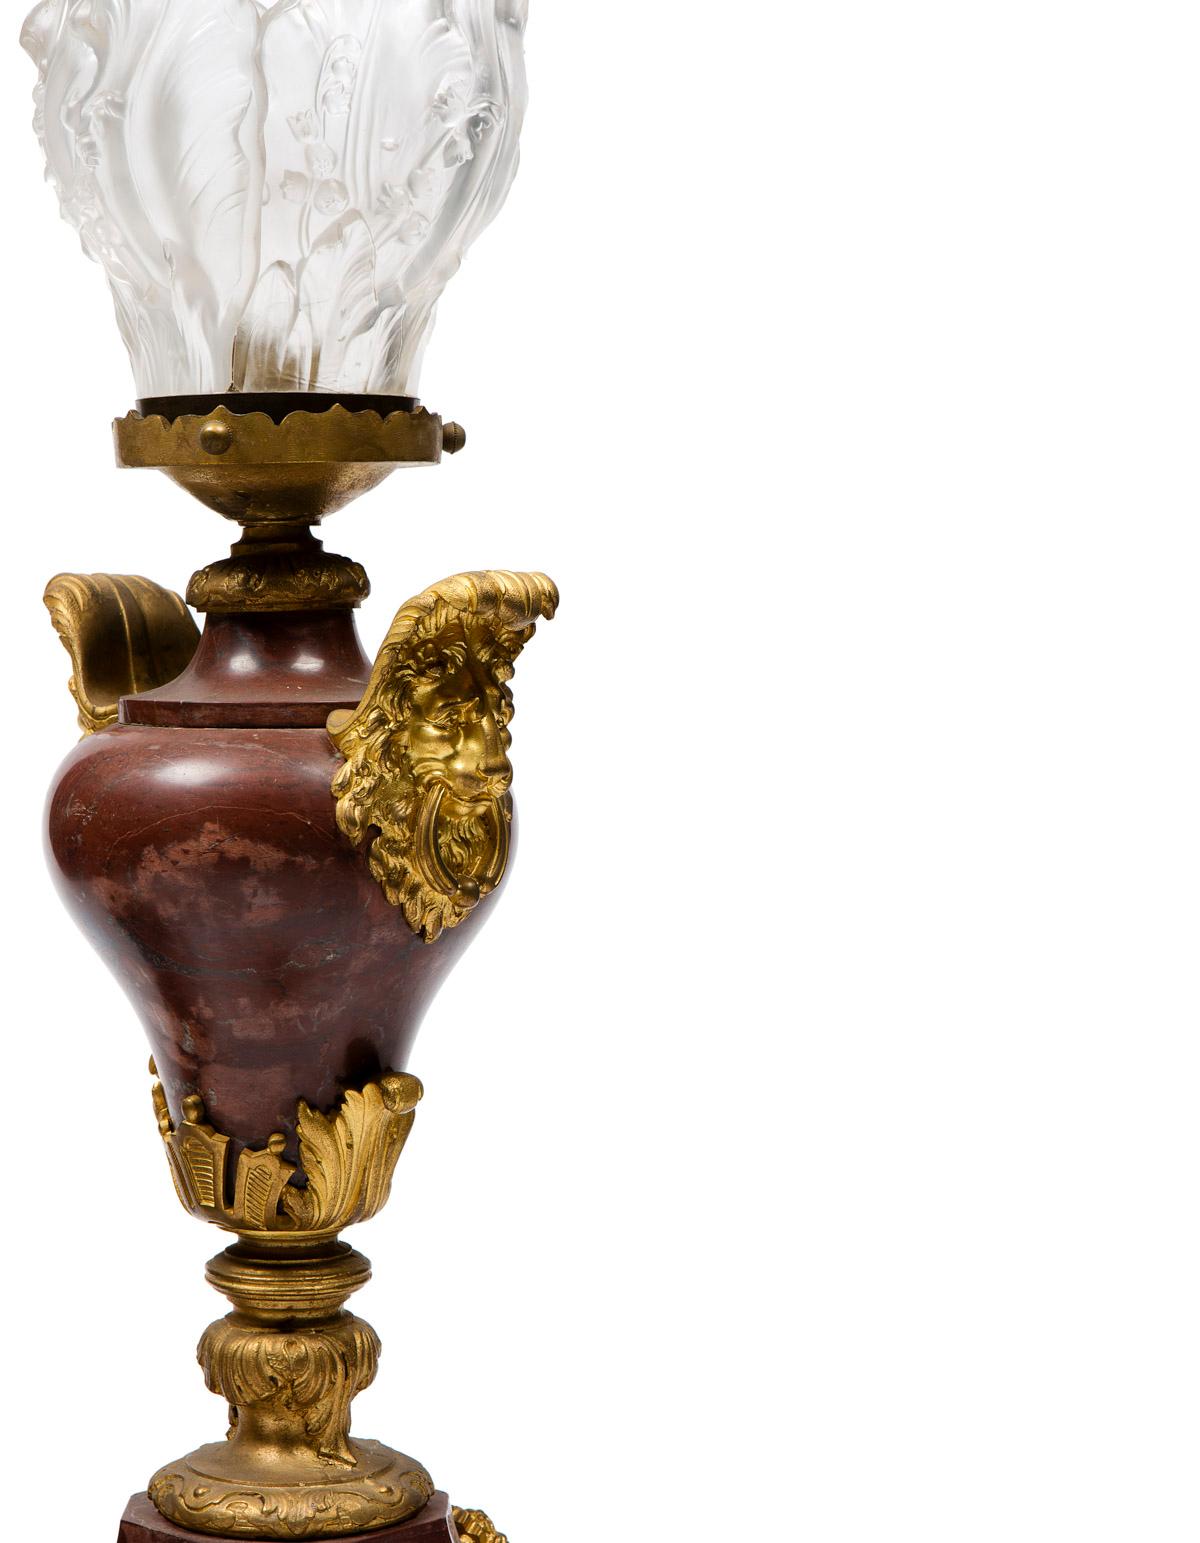 Magnificent Paar Lampe in Bronze und rotem Marmor, louis XVI Stil, sie enden mit einer sehr hübschen Flamme in Kristall.